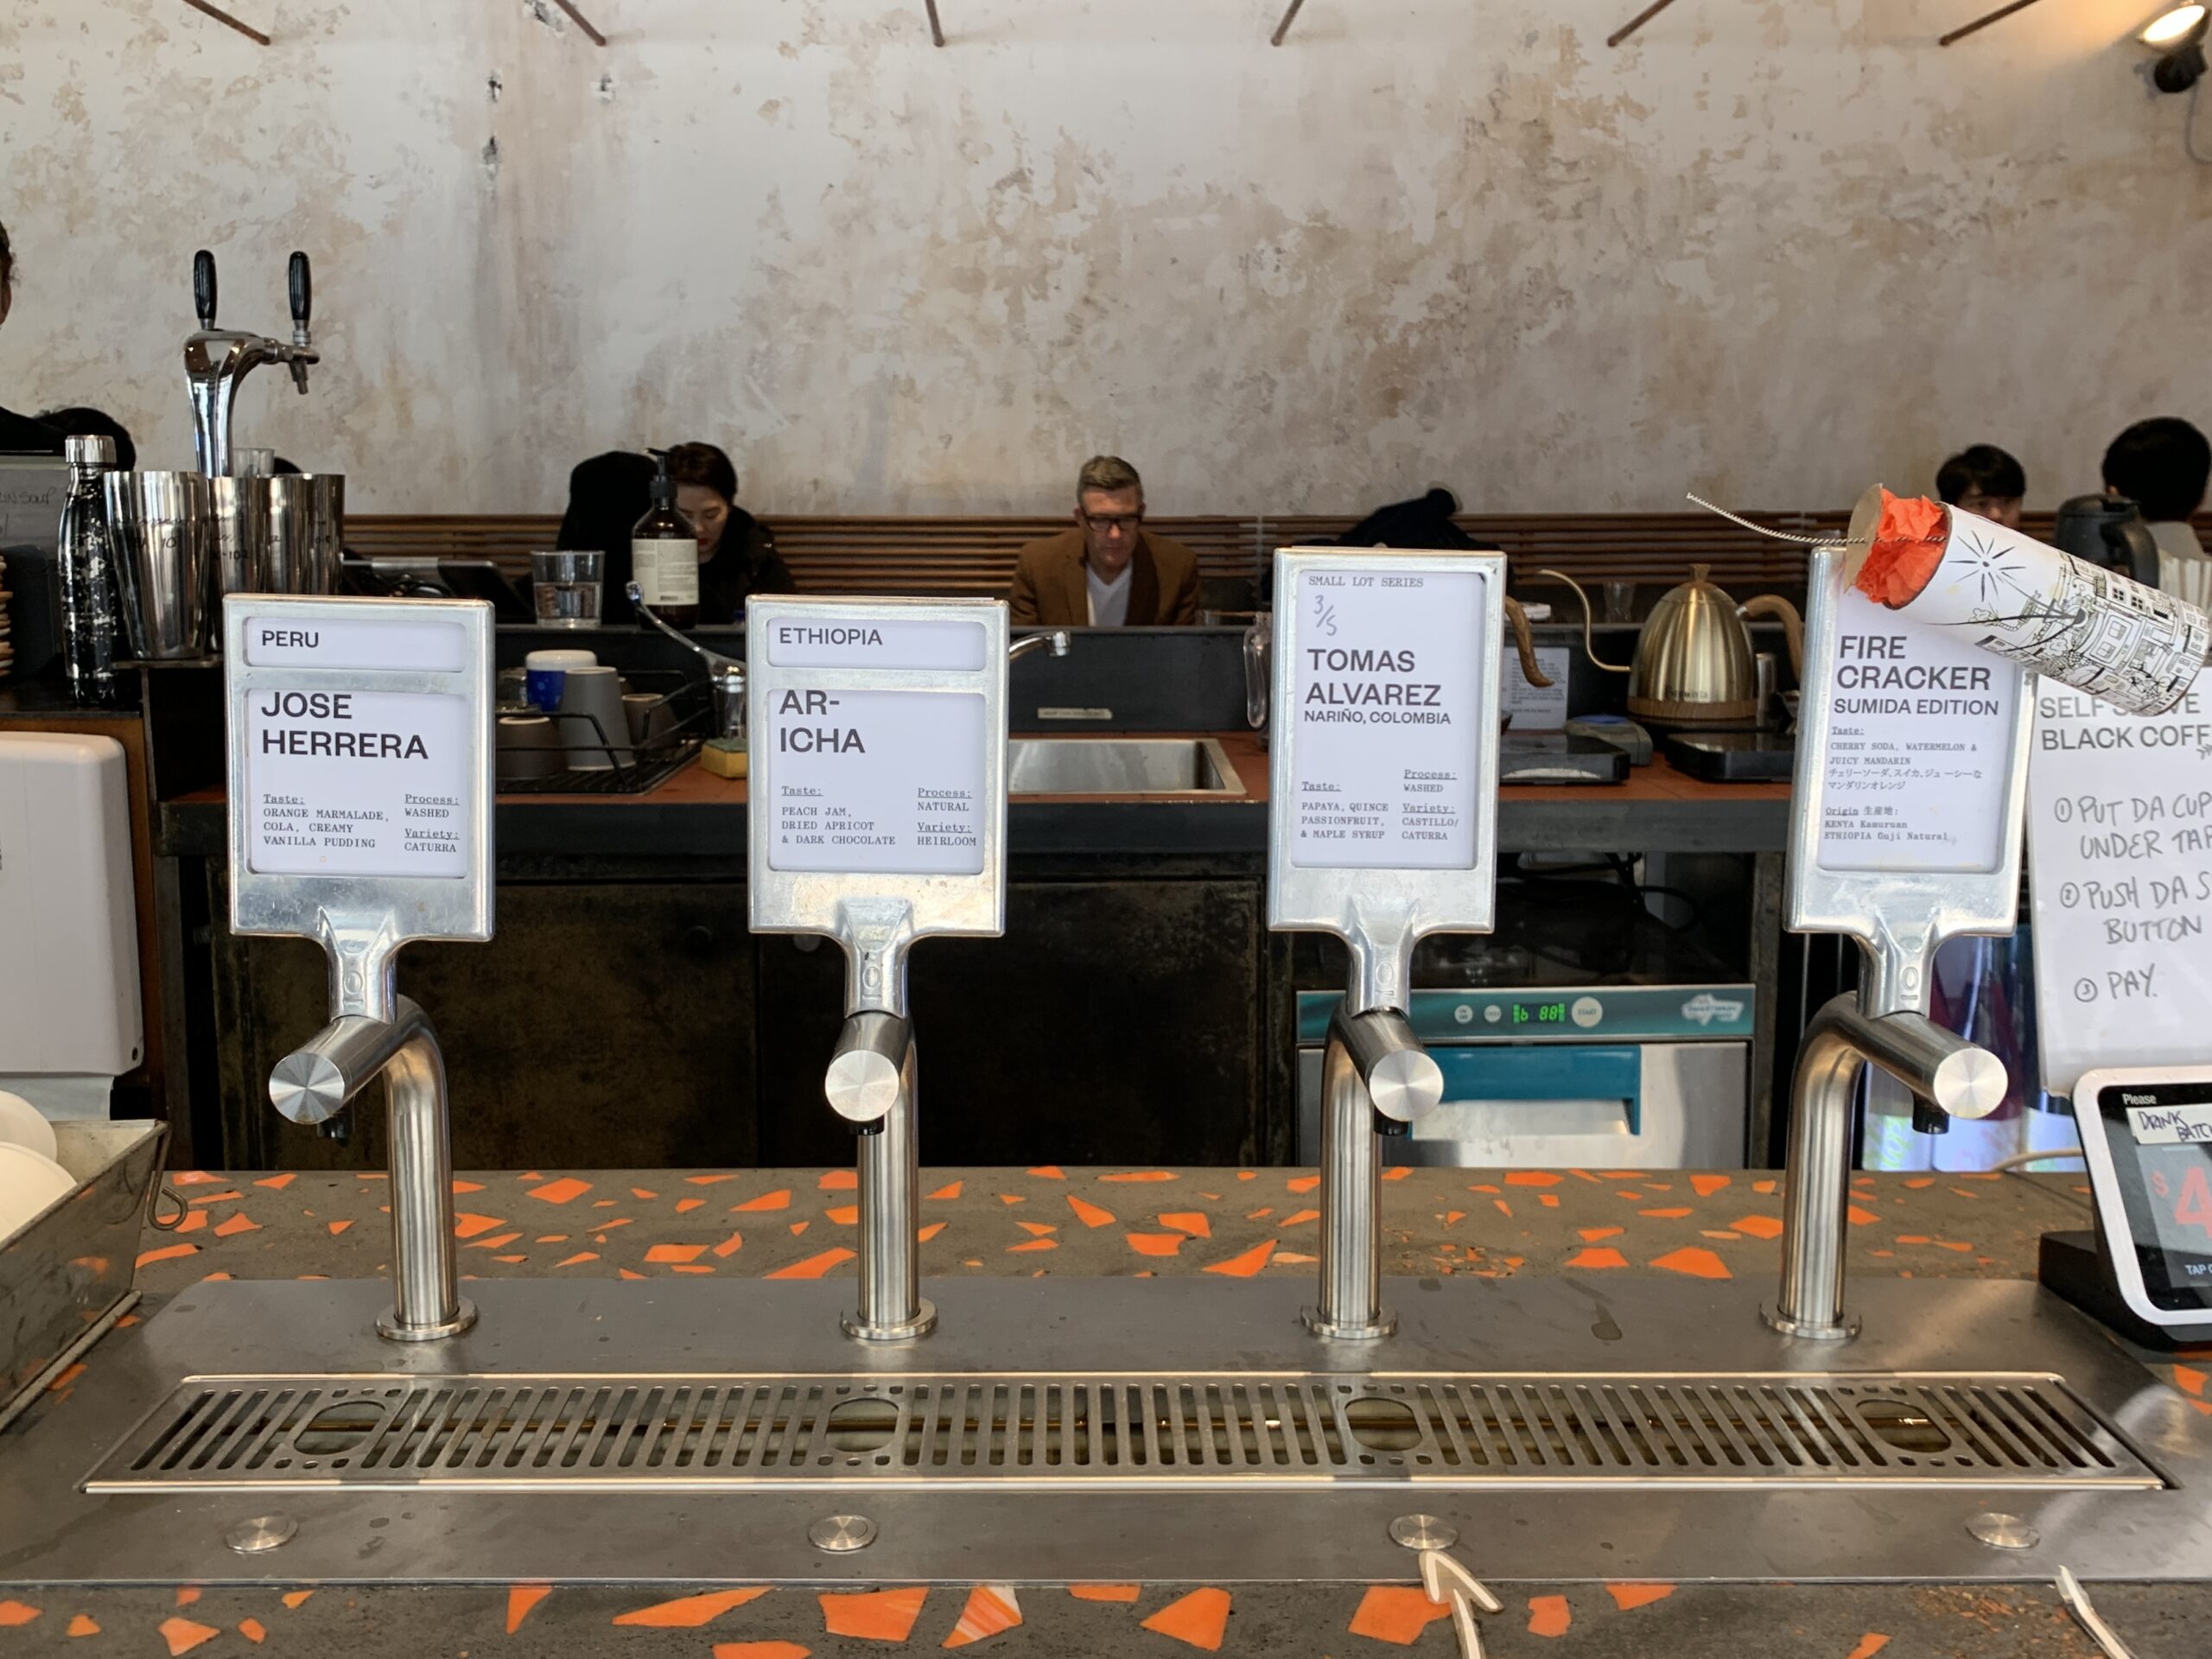 カフェ【Single O】シドニー店舗のタップコーヒーを撮影した写真